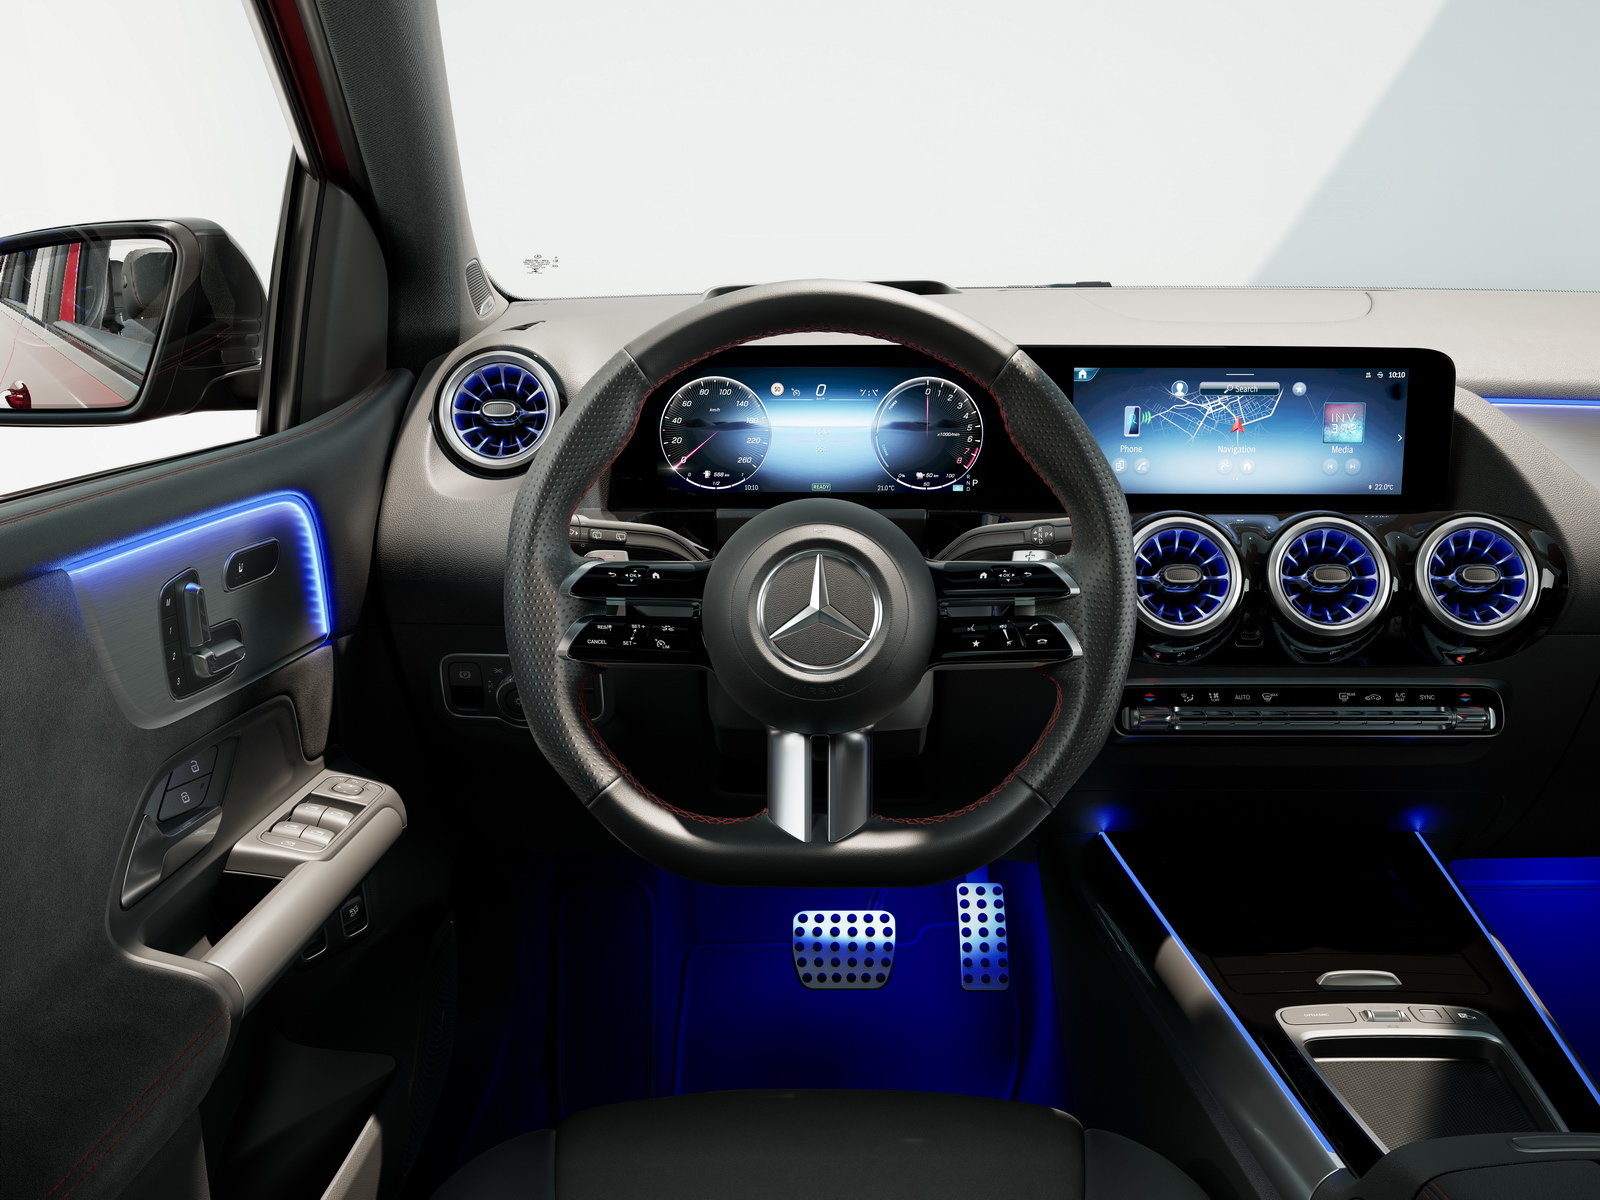 Mercedes-Benz Classe B: dimensioni, interni, motori, prezzi e